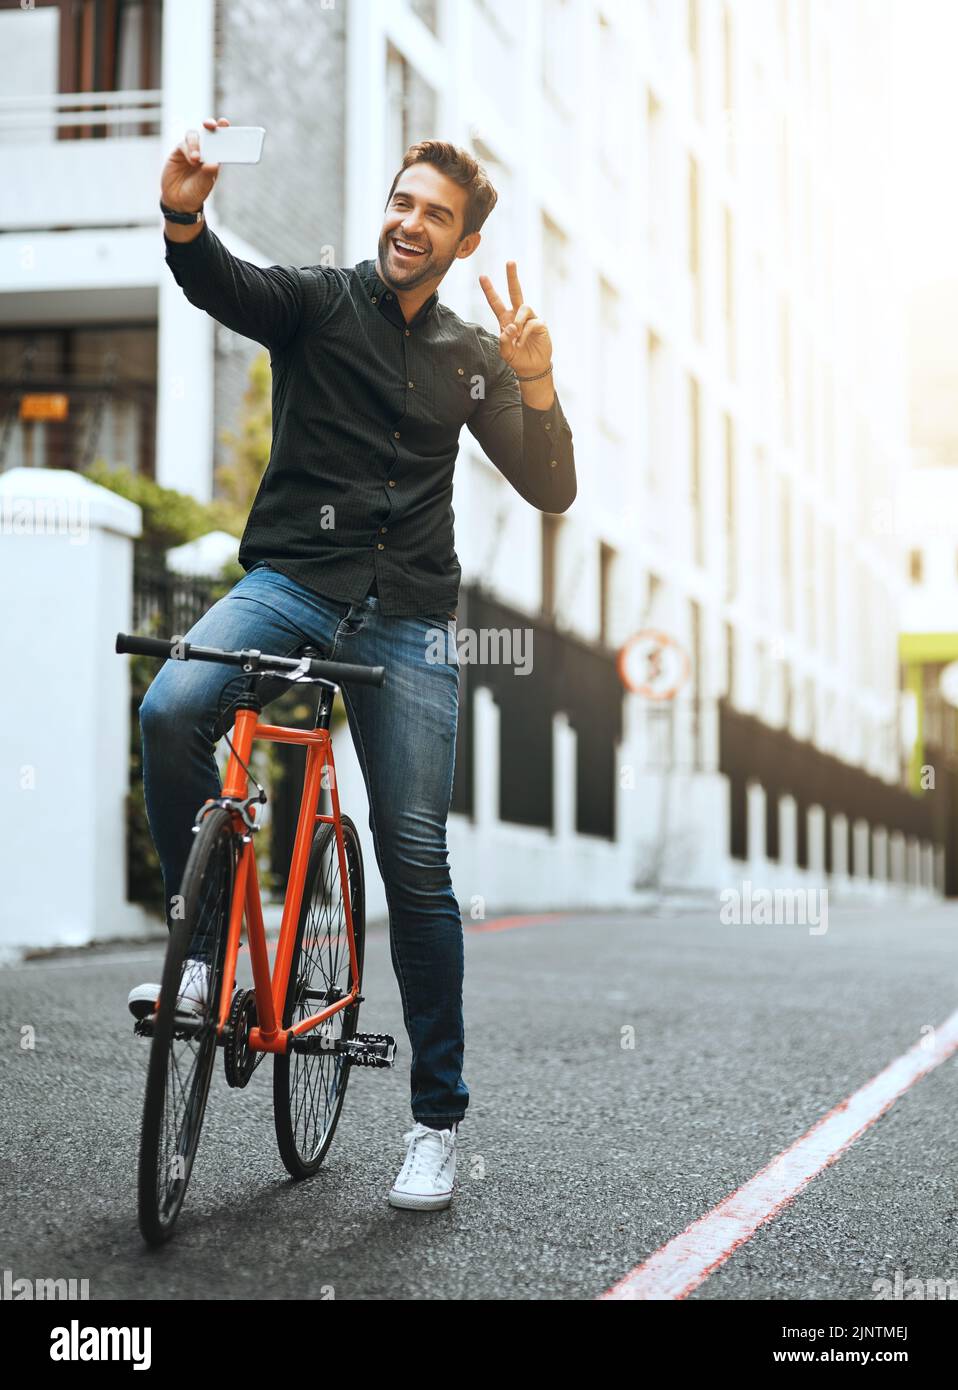 Frieden raus. Ganzkörperaufnahme eines hübschen jungen Mannes, der Selfies macht, während er mit dem Fahrrad durch die Stadt fährt. Stockfoto